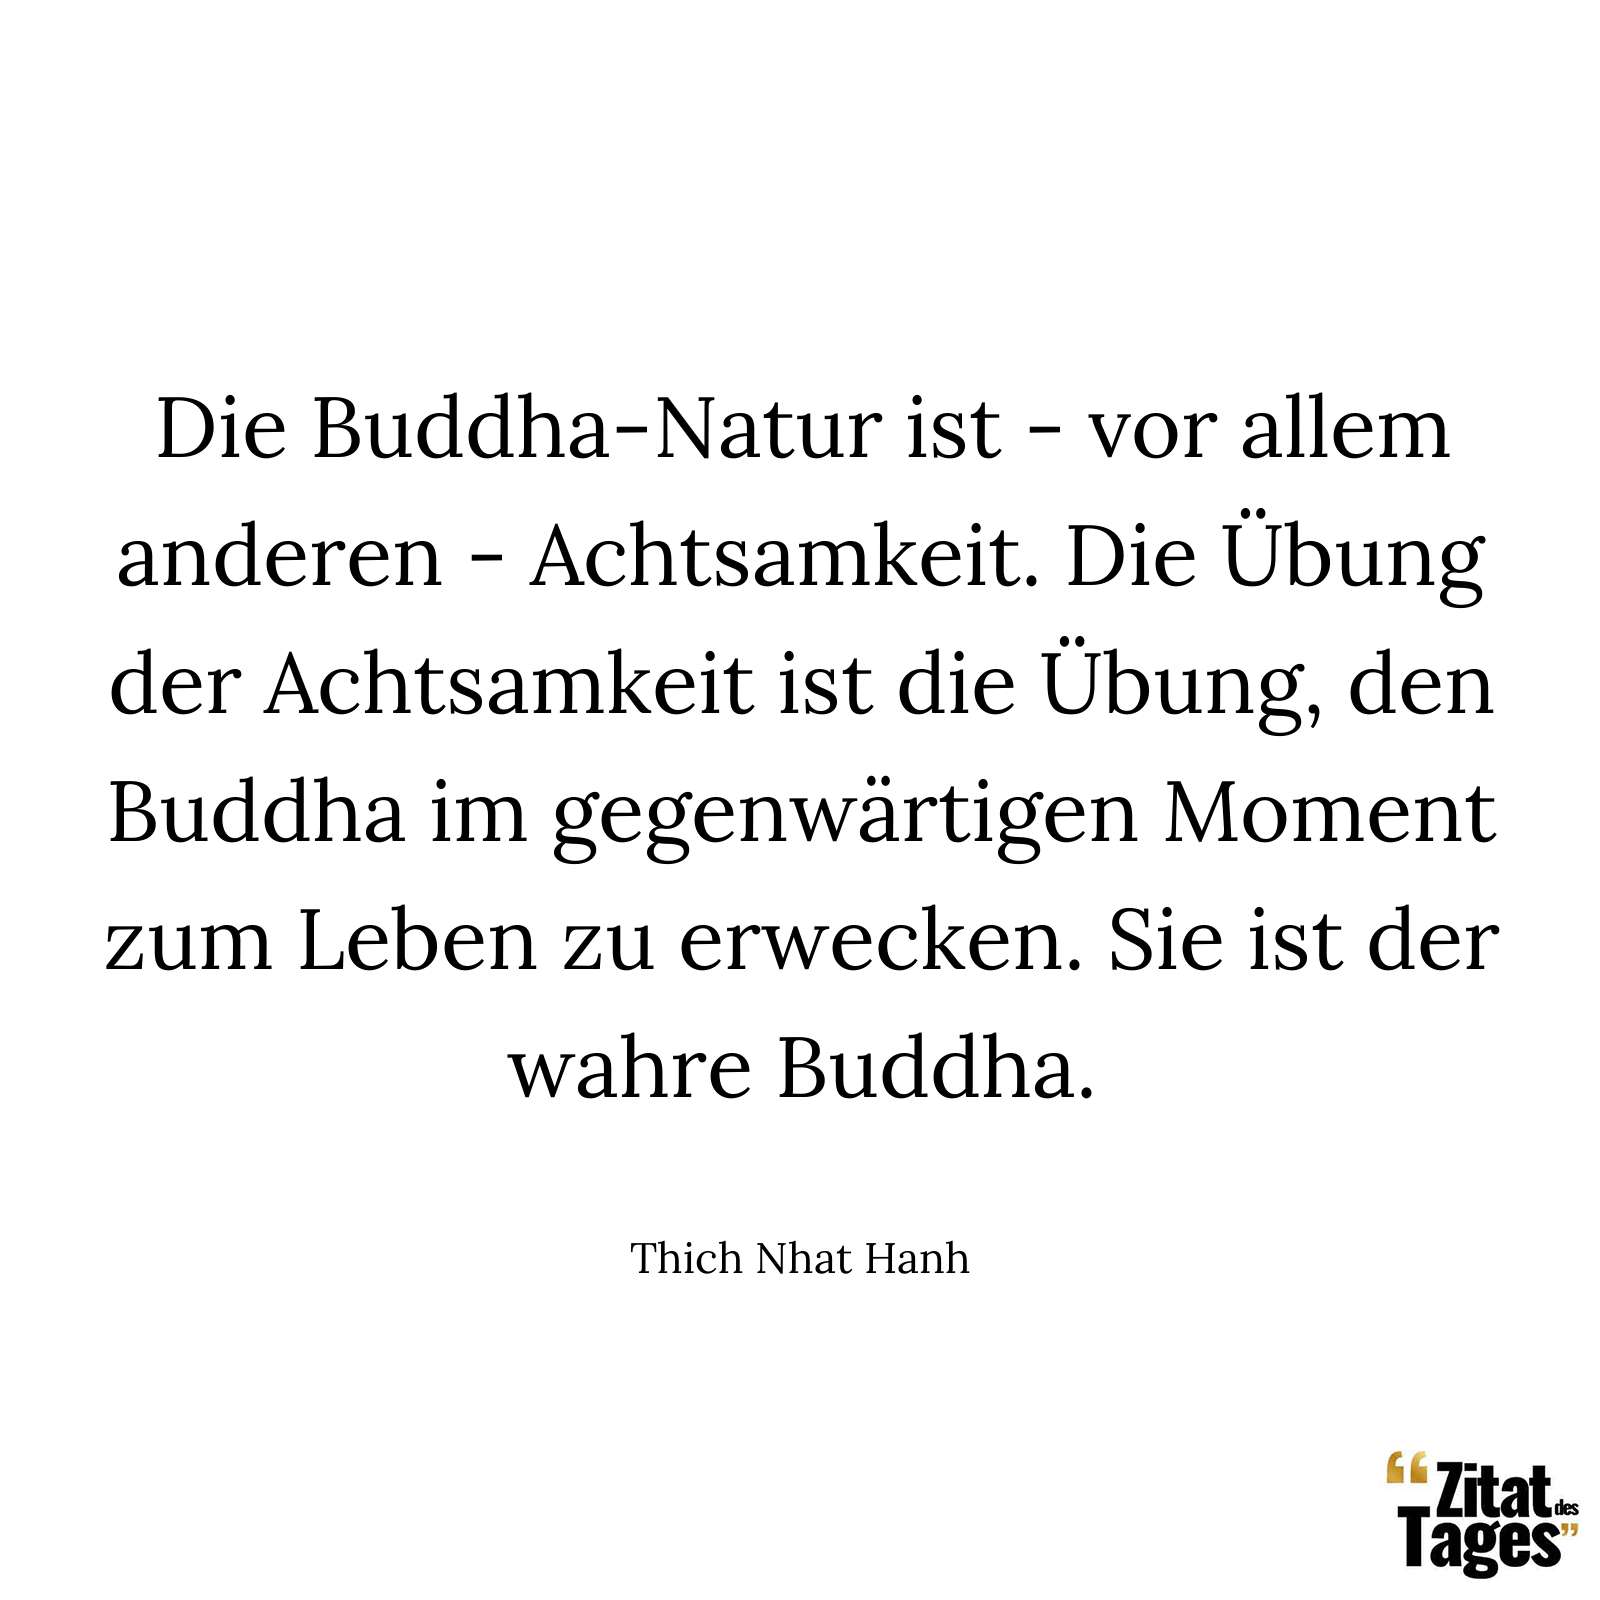 Die Buddha-Natur ist - vor allem anderen - Achtsamkeit. Die Übung der Achtsamkeit ist die Übung, den Buddha im gegenwärtigen Moment zum Leben zu erwecken. Sie ist der wahre Buddha. - Thich Nhat Hanh